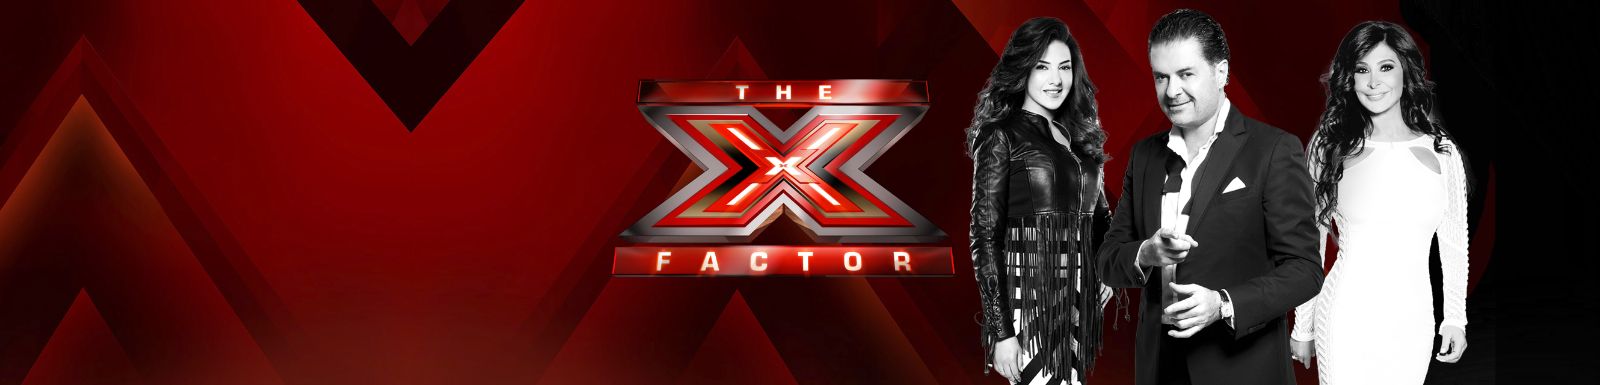 مباشرة توقيت بث برنامج اكس فاكتور 2015 The X Factor على قناة MBC مصر و MBC4